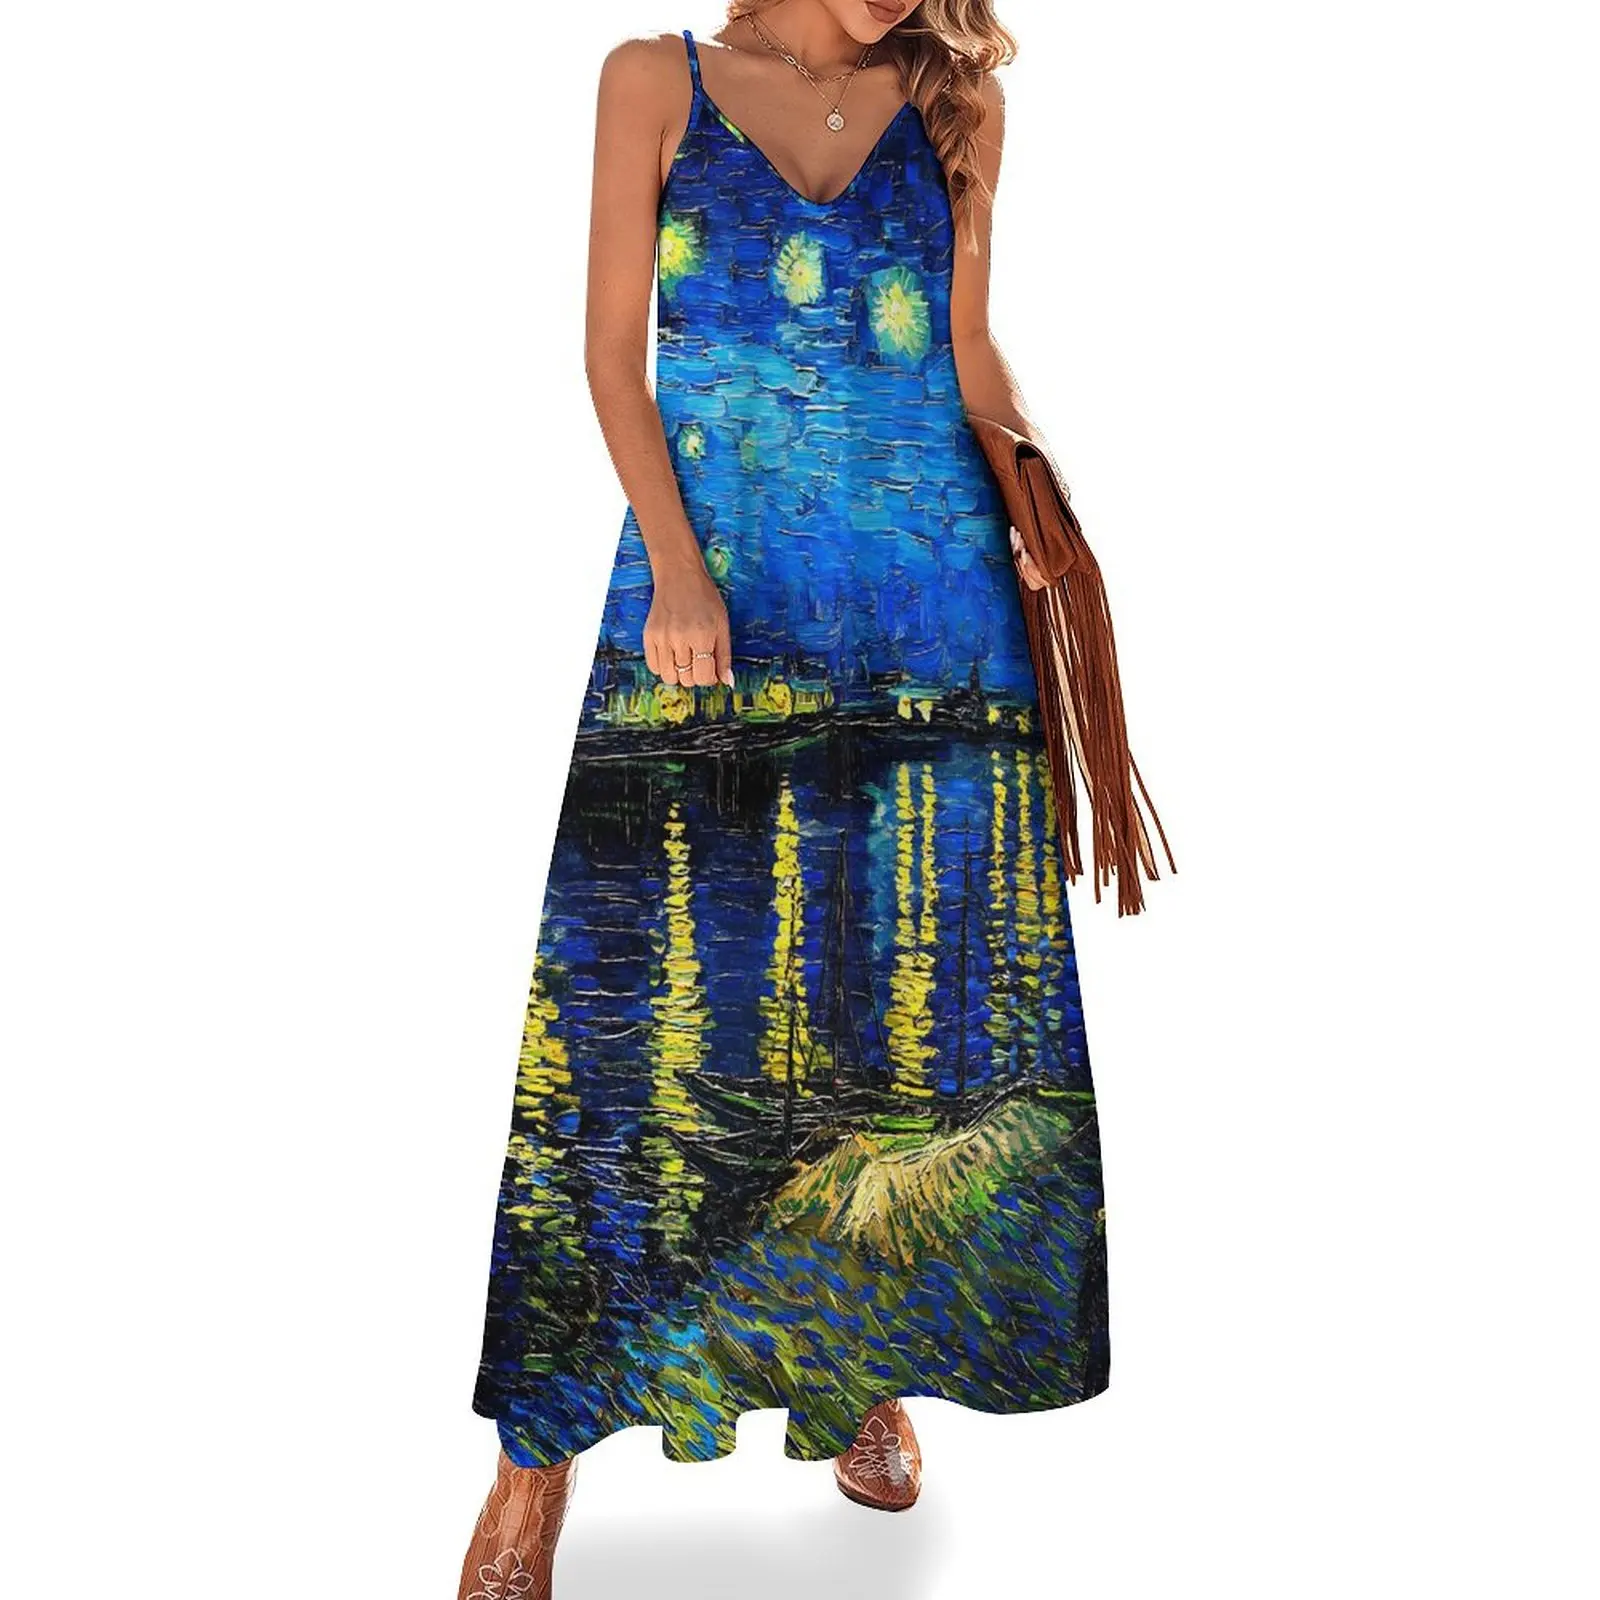 

Винтажное платье-макси с рисунком звездной ночи, Винсента Ван Гога